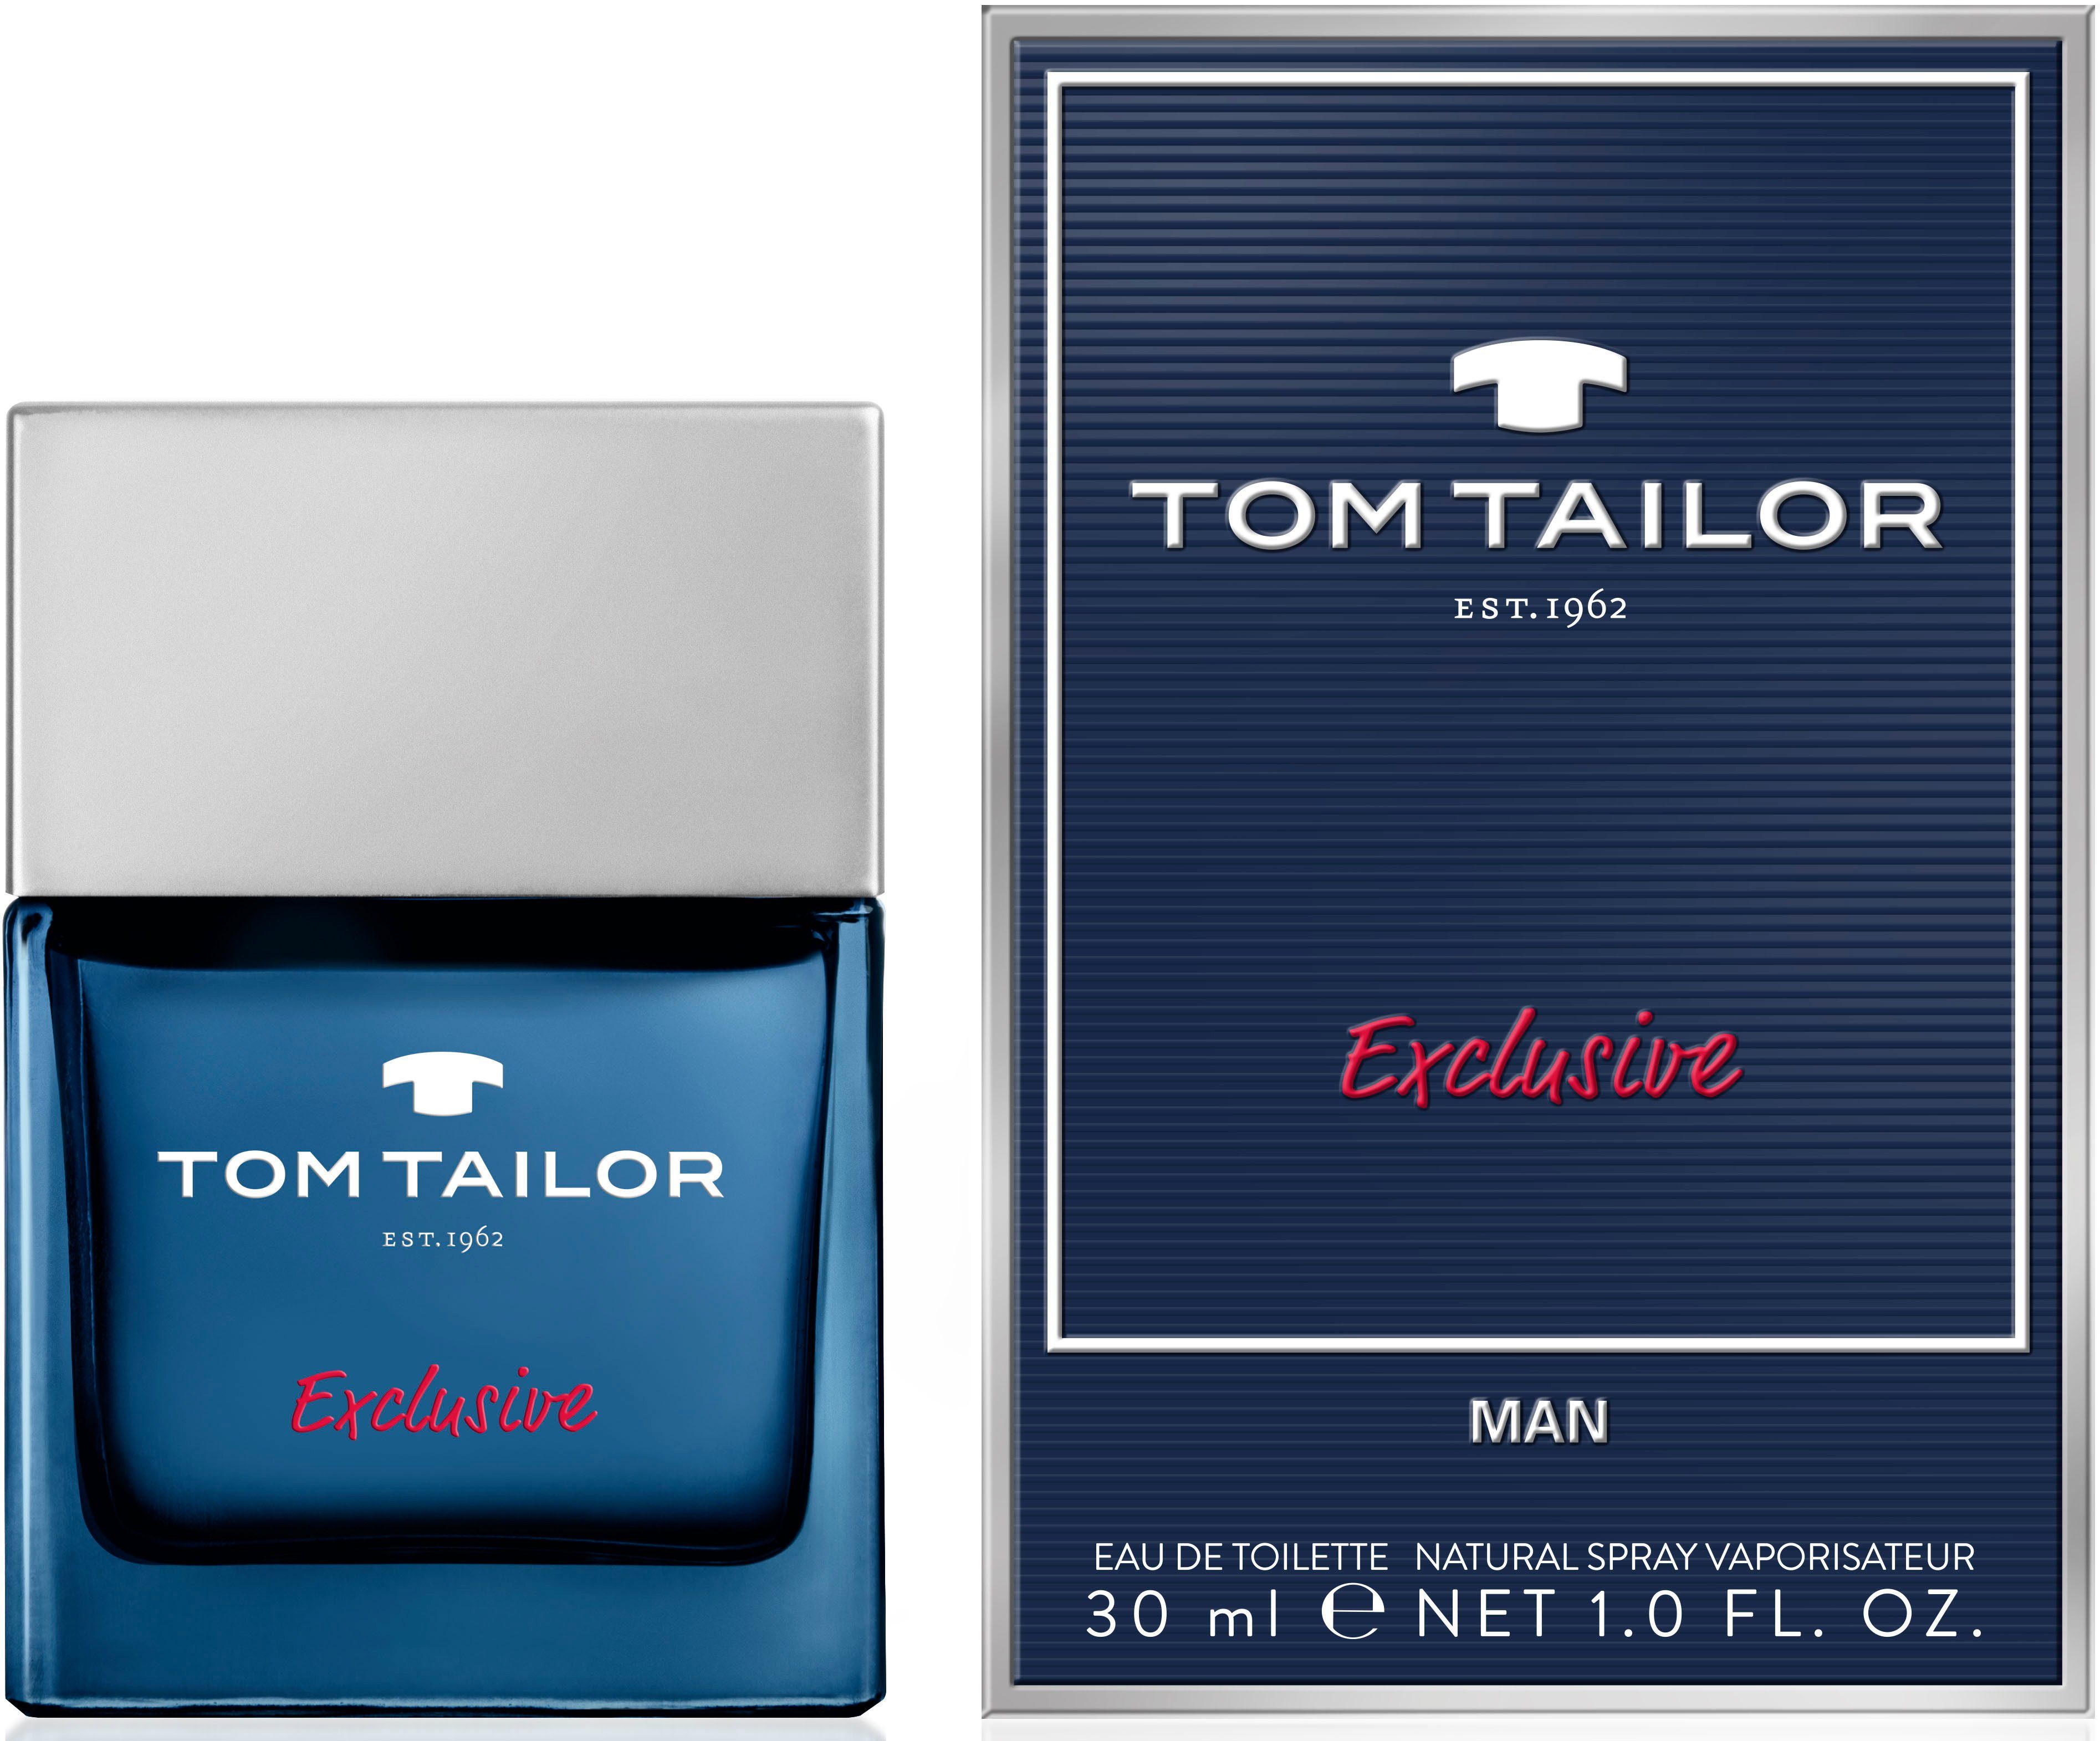 Man Tailor Exclusive TOM Tom Eau Toilette de TAILOR